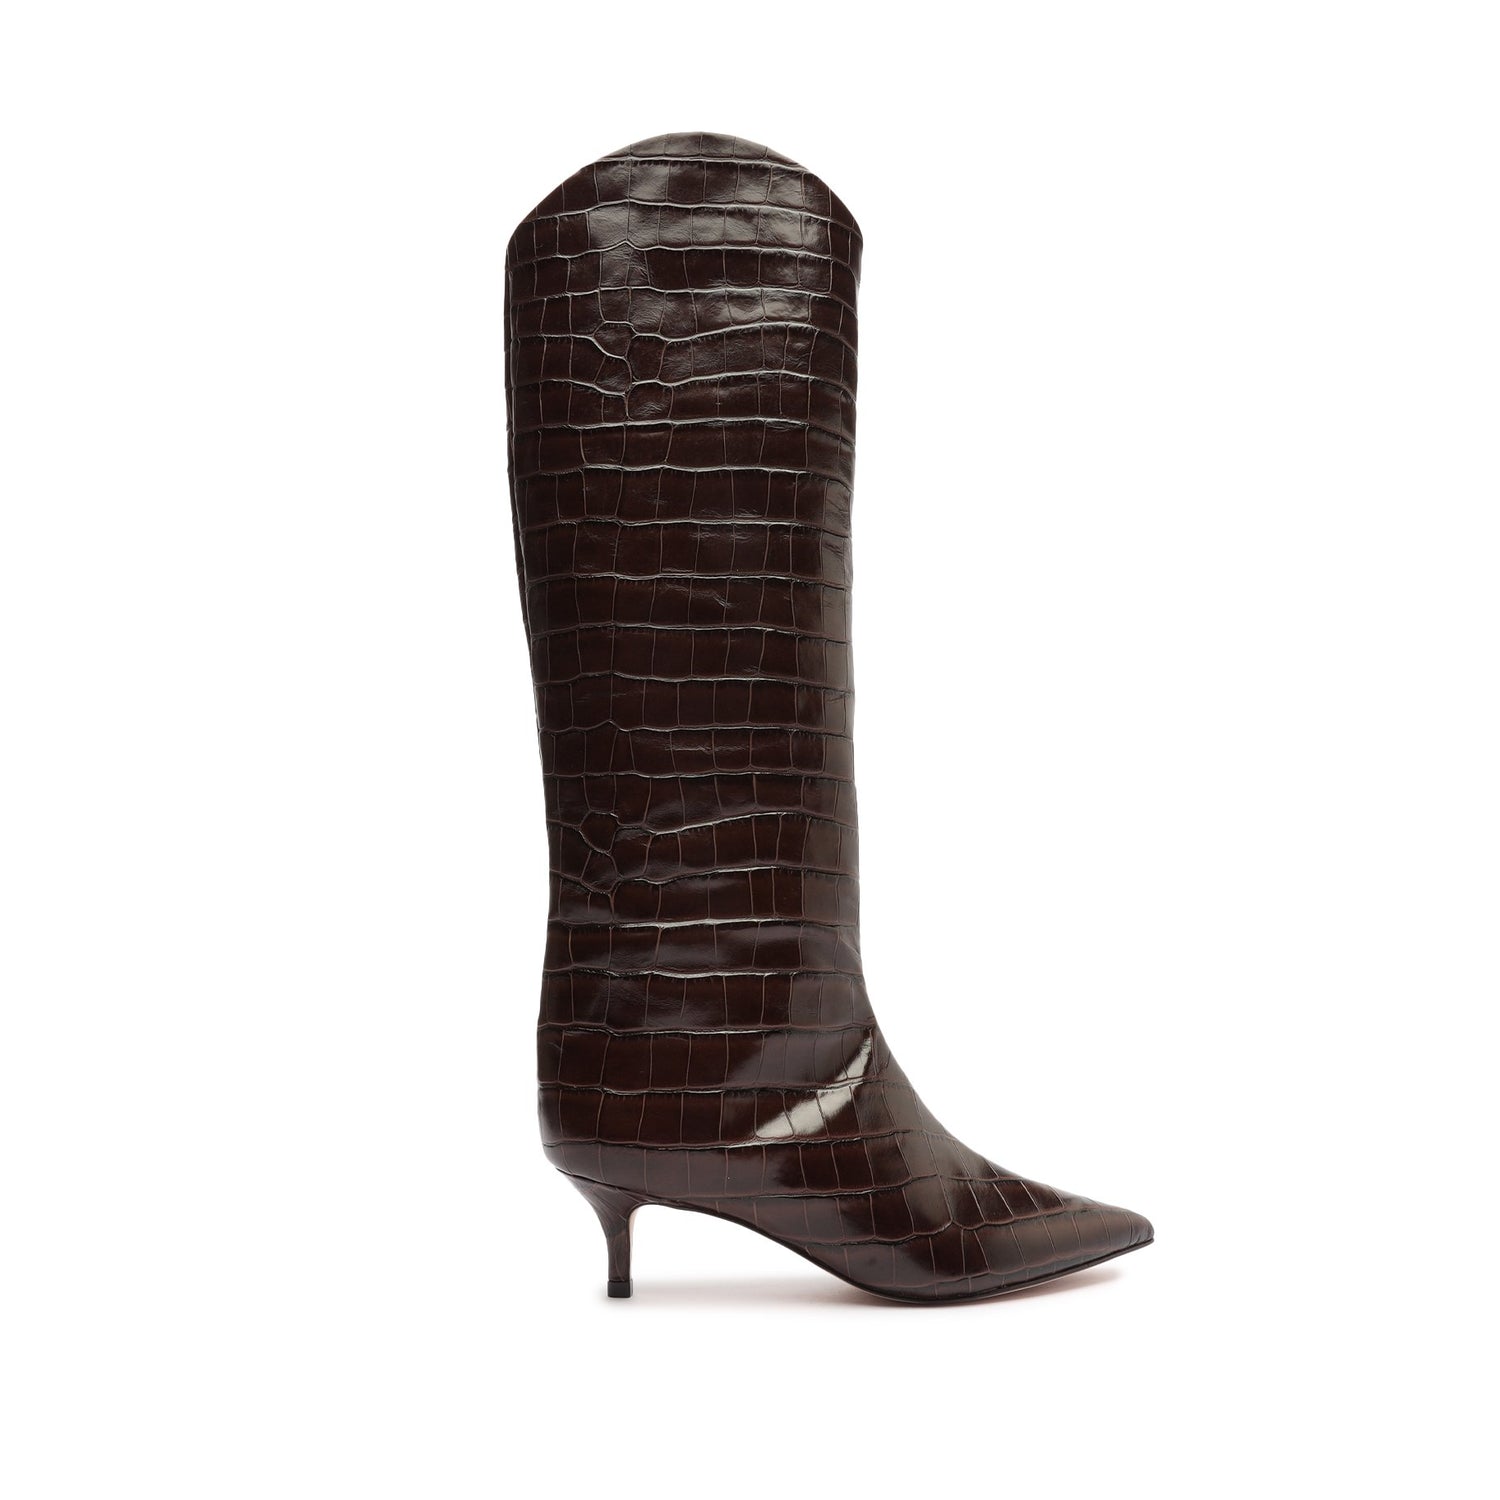 Maryana Lo Crocodile-Embossed Leather Boot Dark Chocolate Crocodile-Embossed Leather